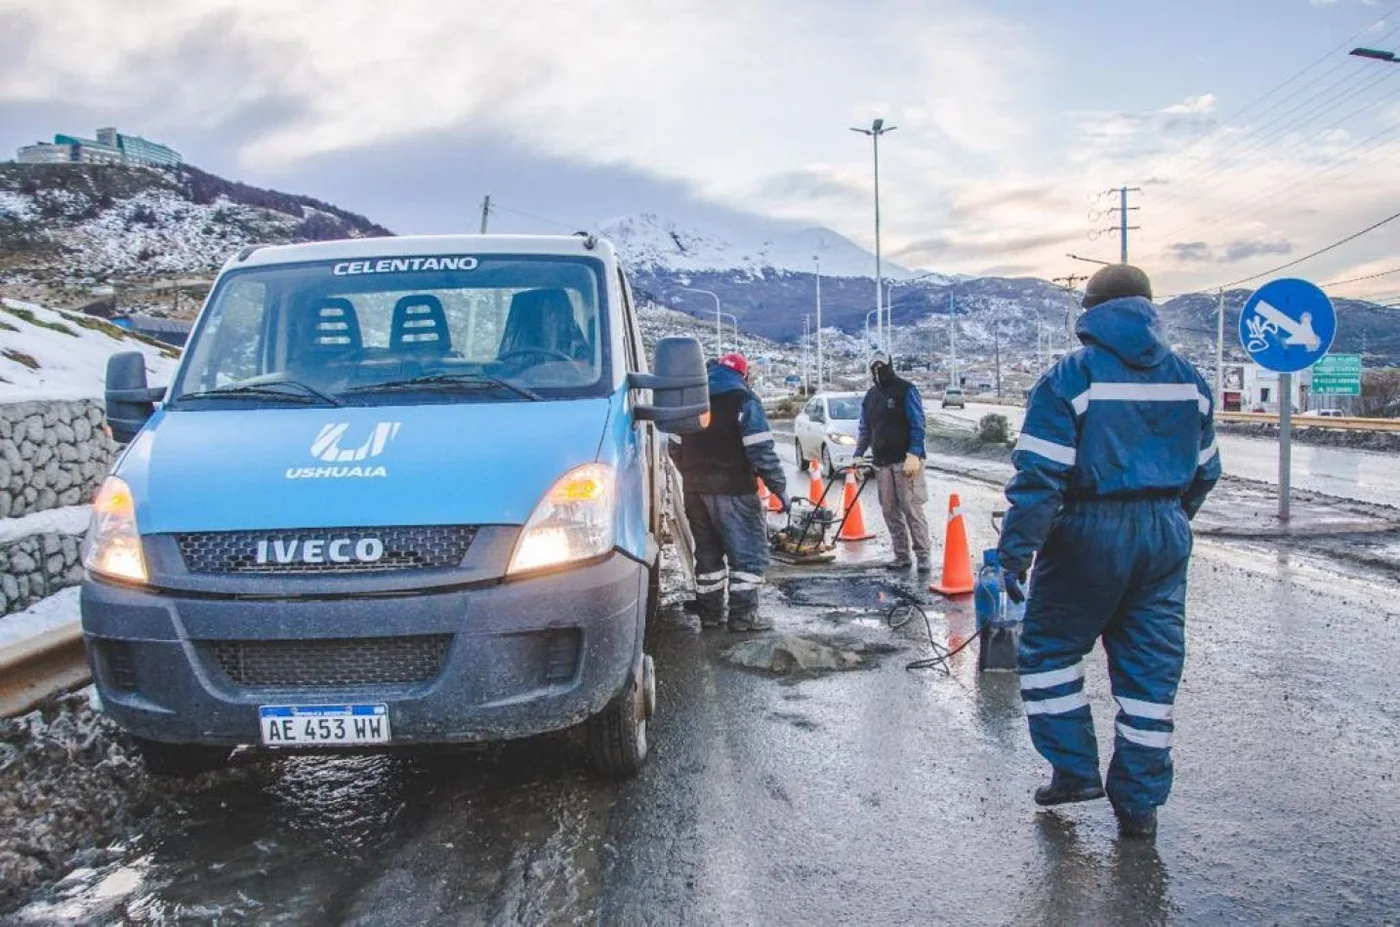 Cuadrillas municipales hicieron reparaciones en la rotonda de Andorra